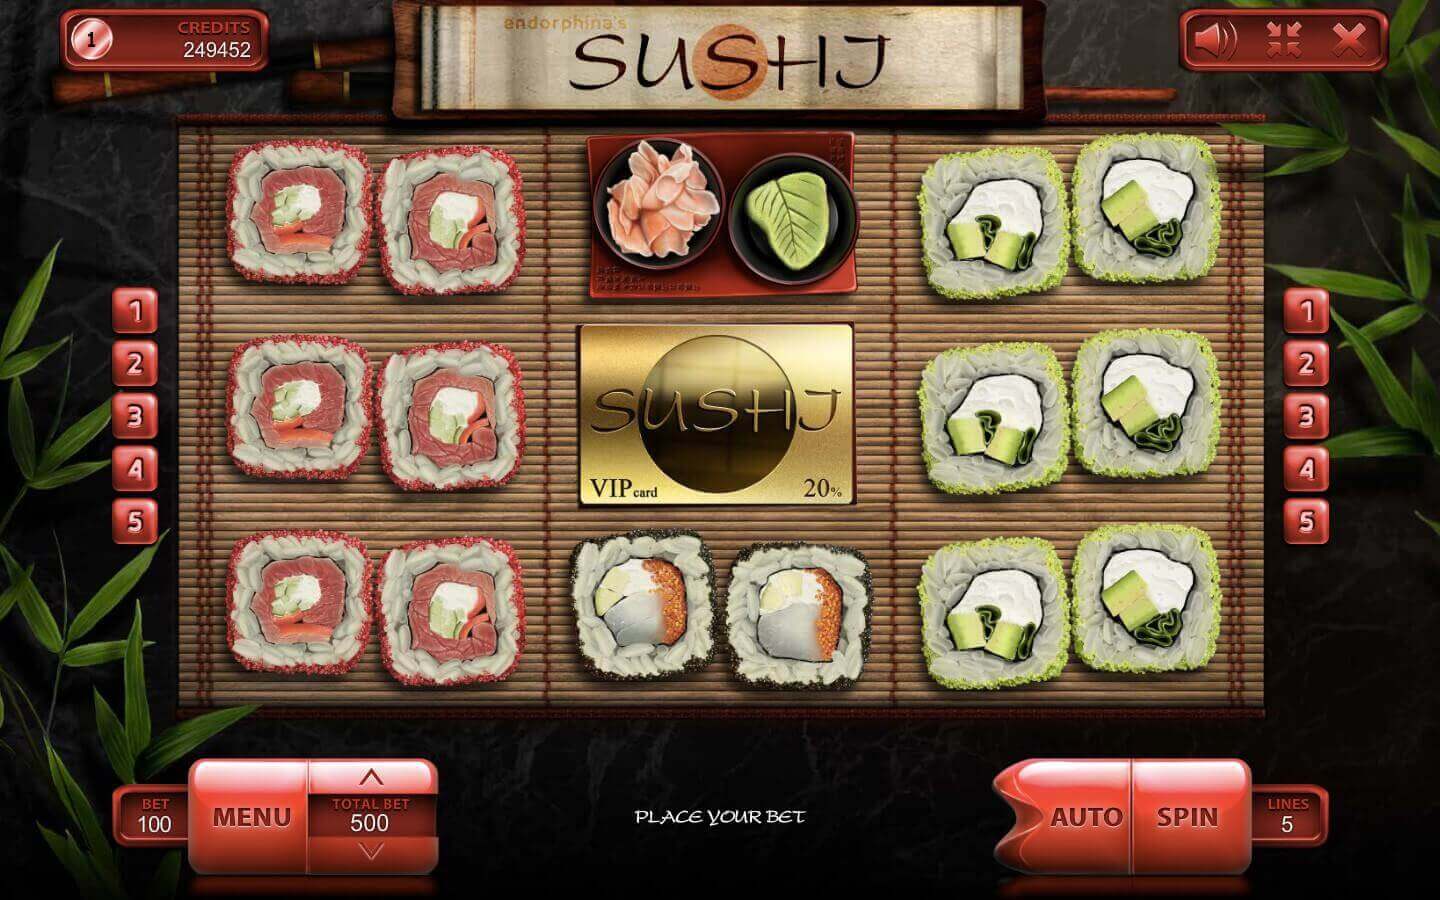 Sushi Processo do jogo